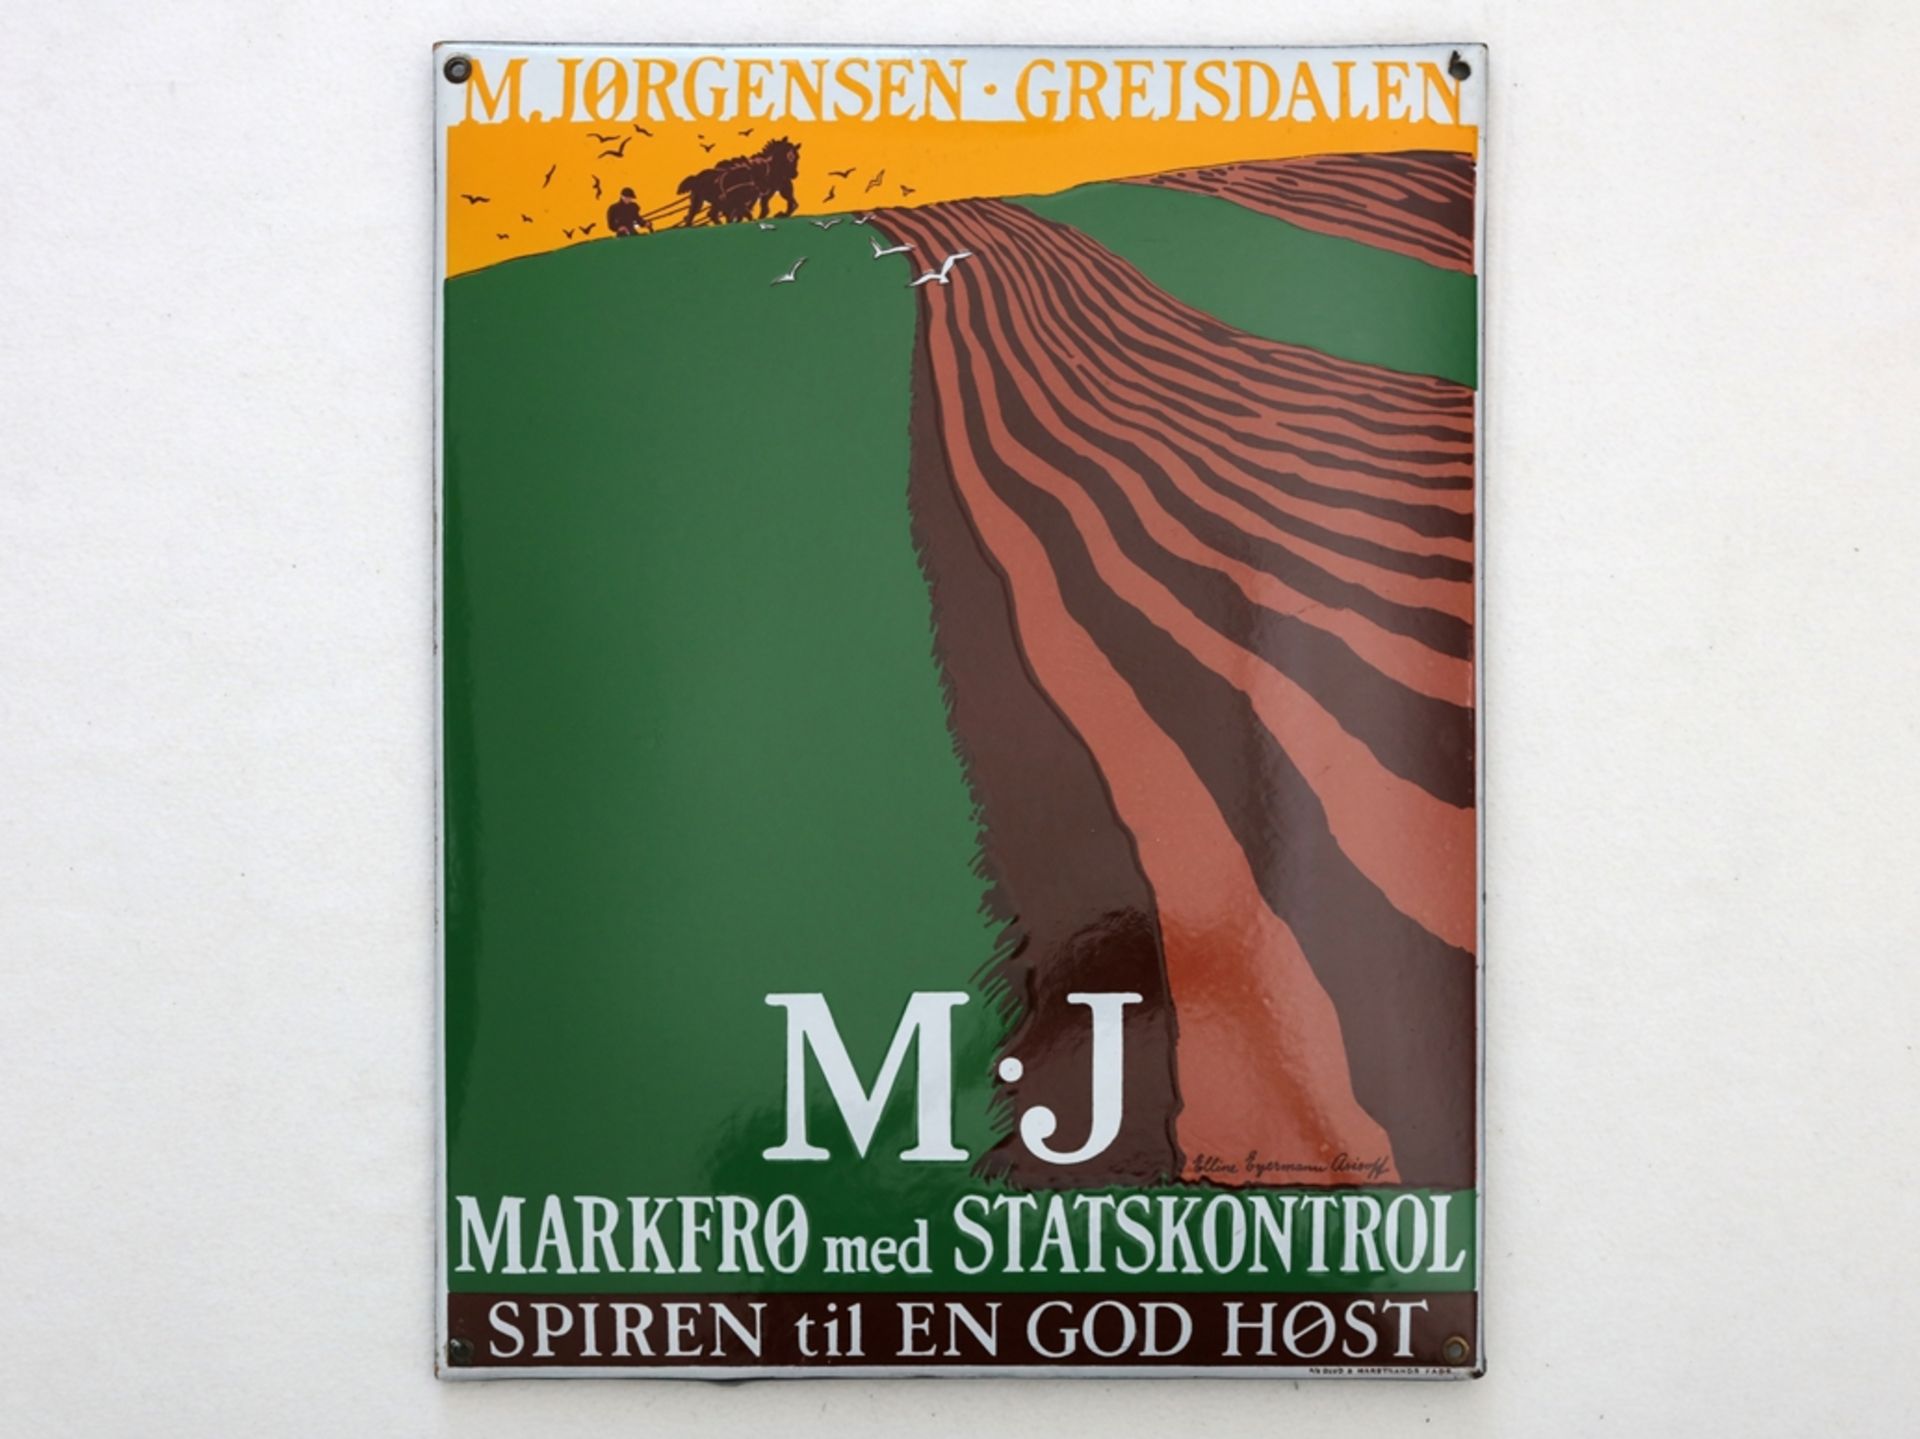 Enamel sign M.Jorgensen, dream condition! Denmark/Grejsdalen around 1930 - Image 7 of 7